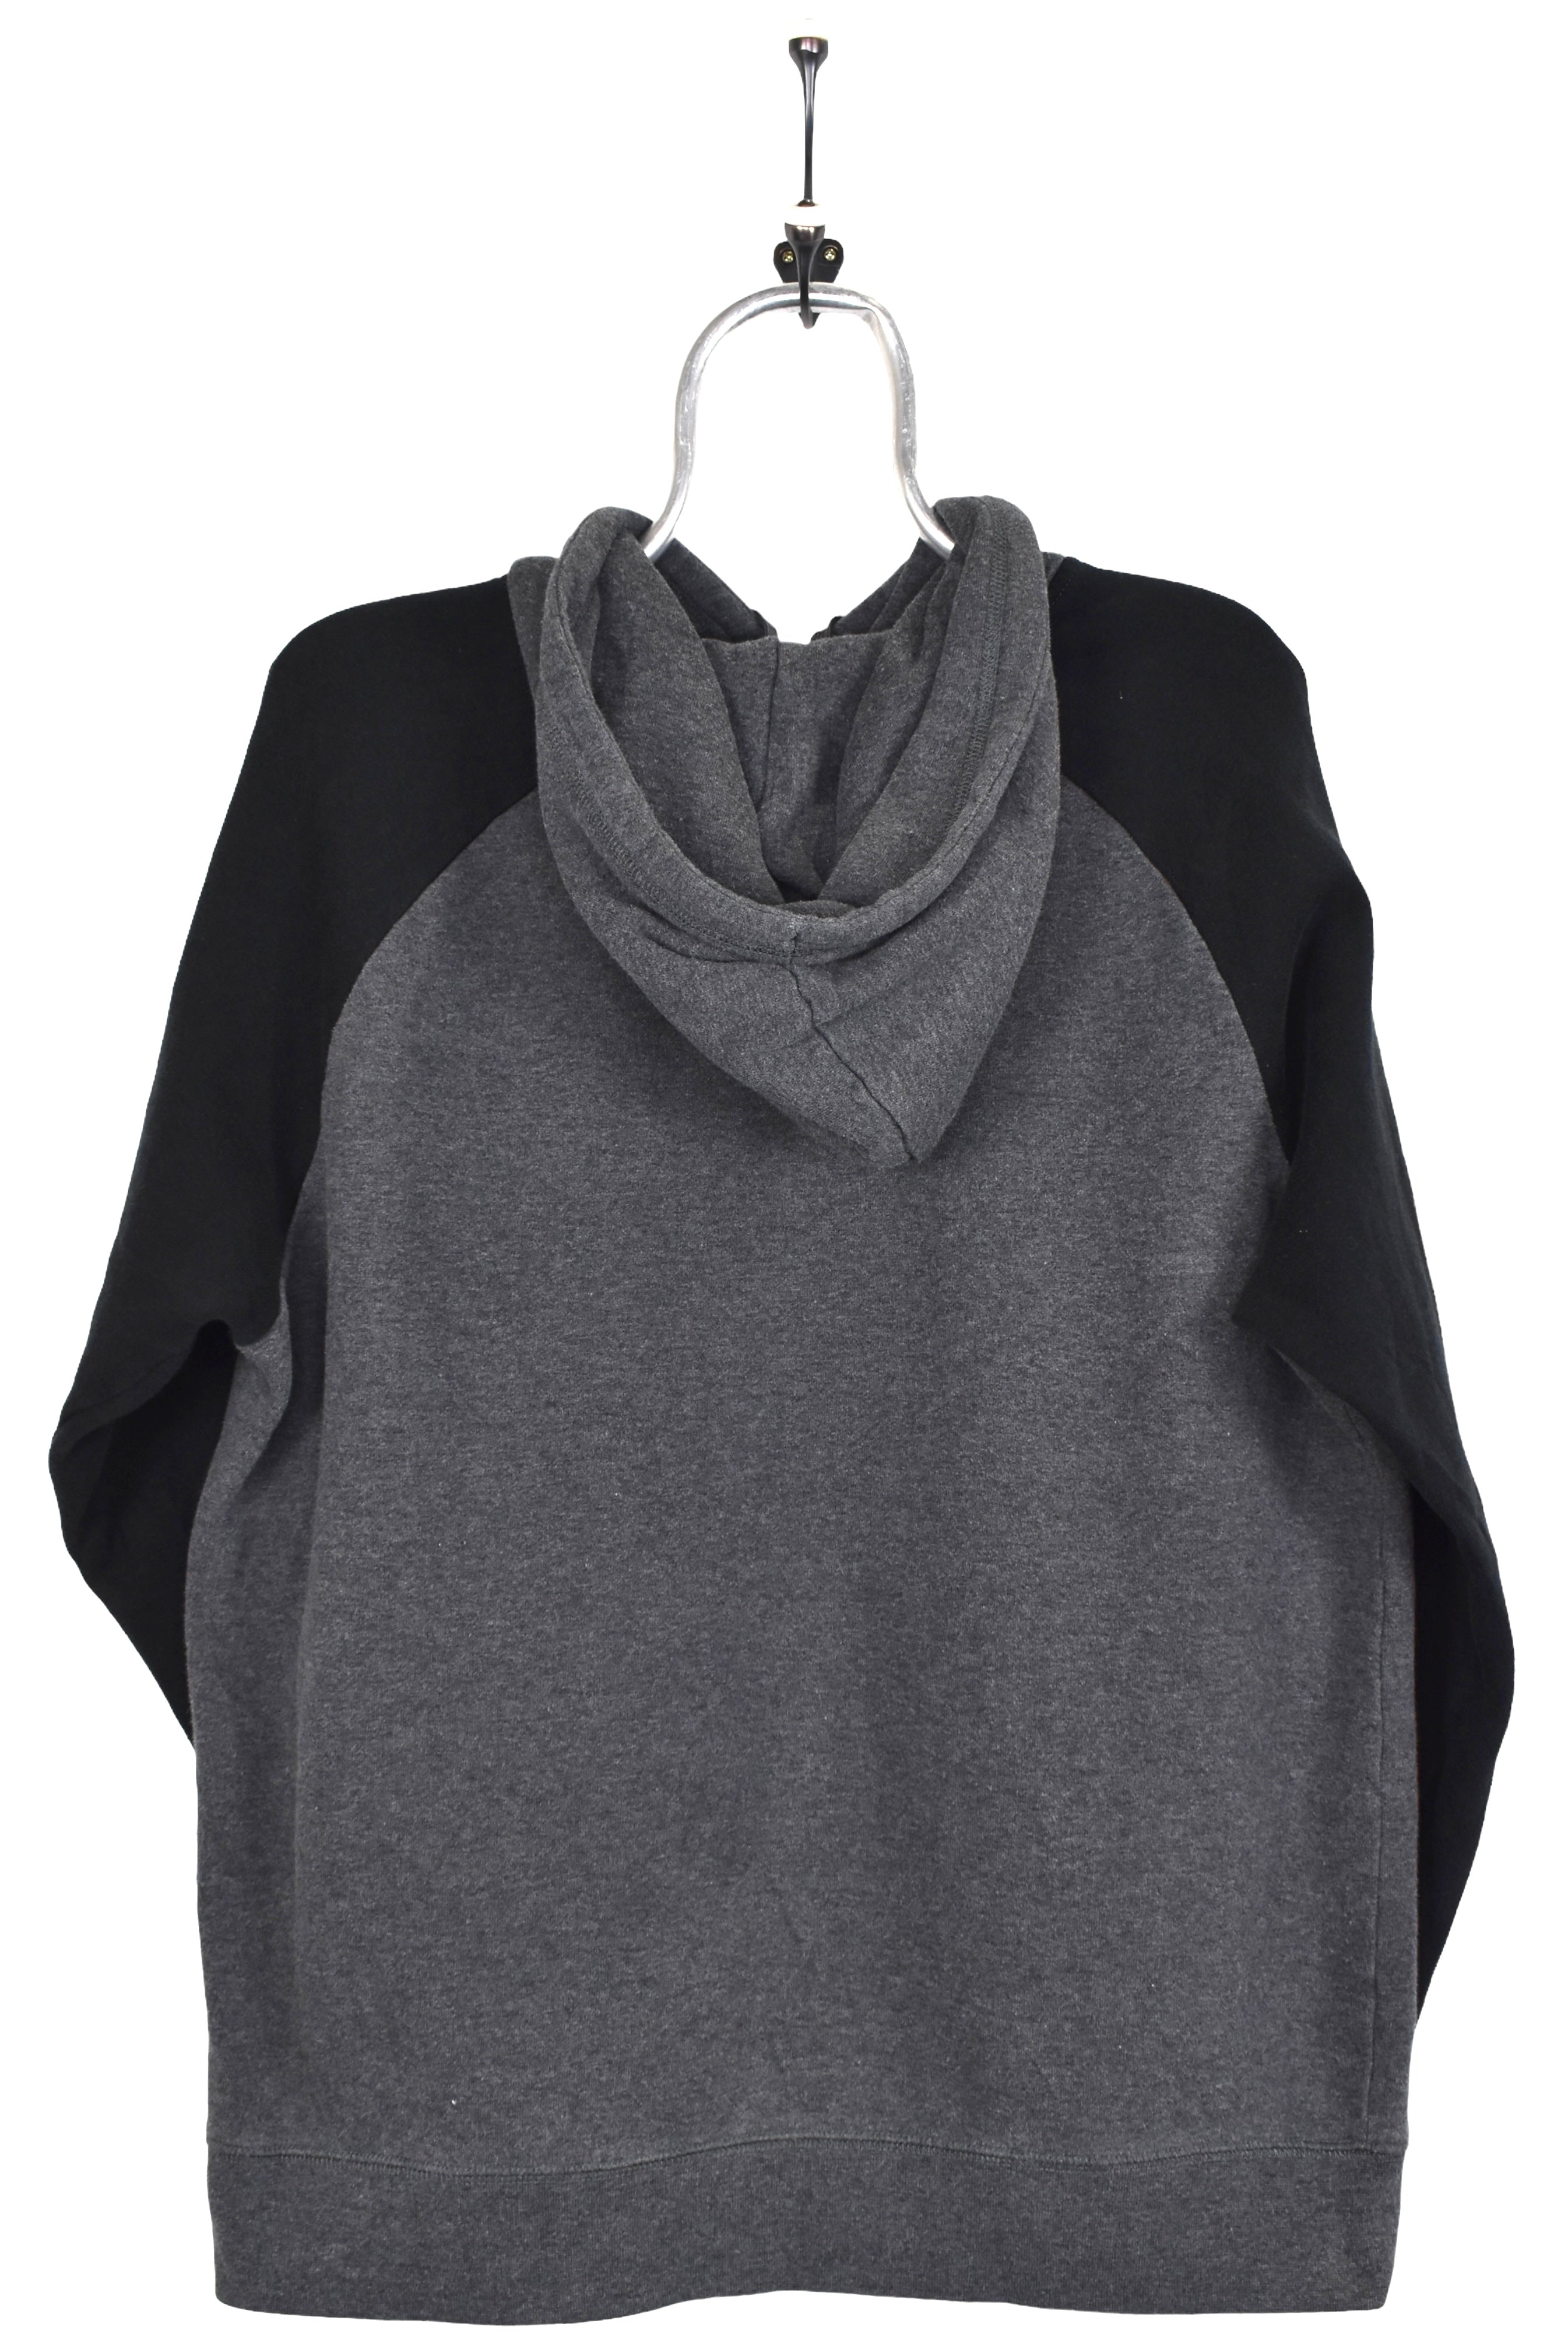 Vintage Reebok hoodie, grey embroidered sweatshirt - Large